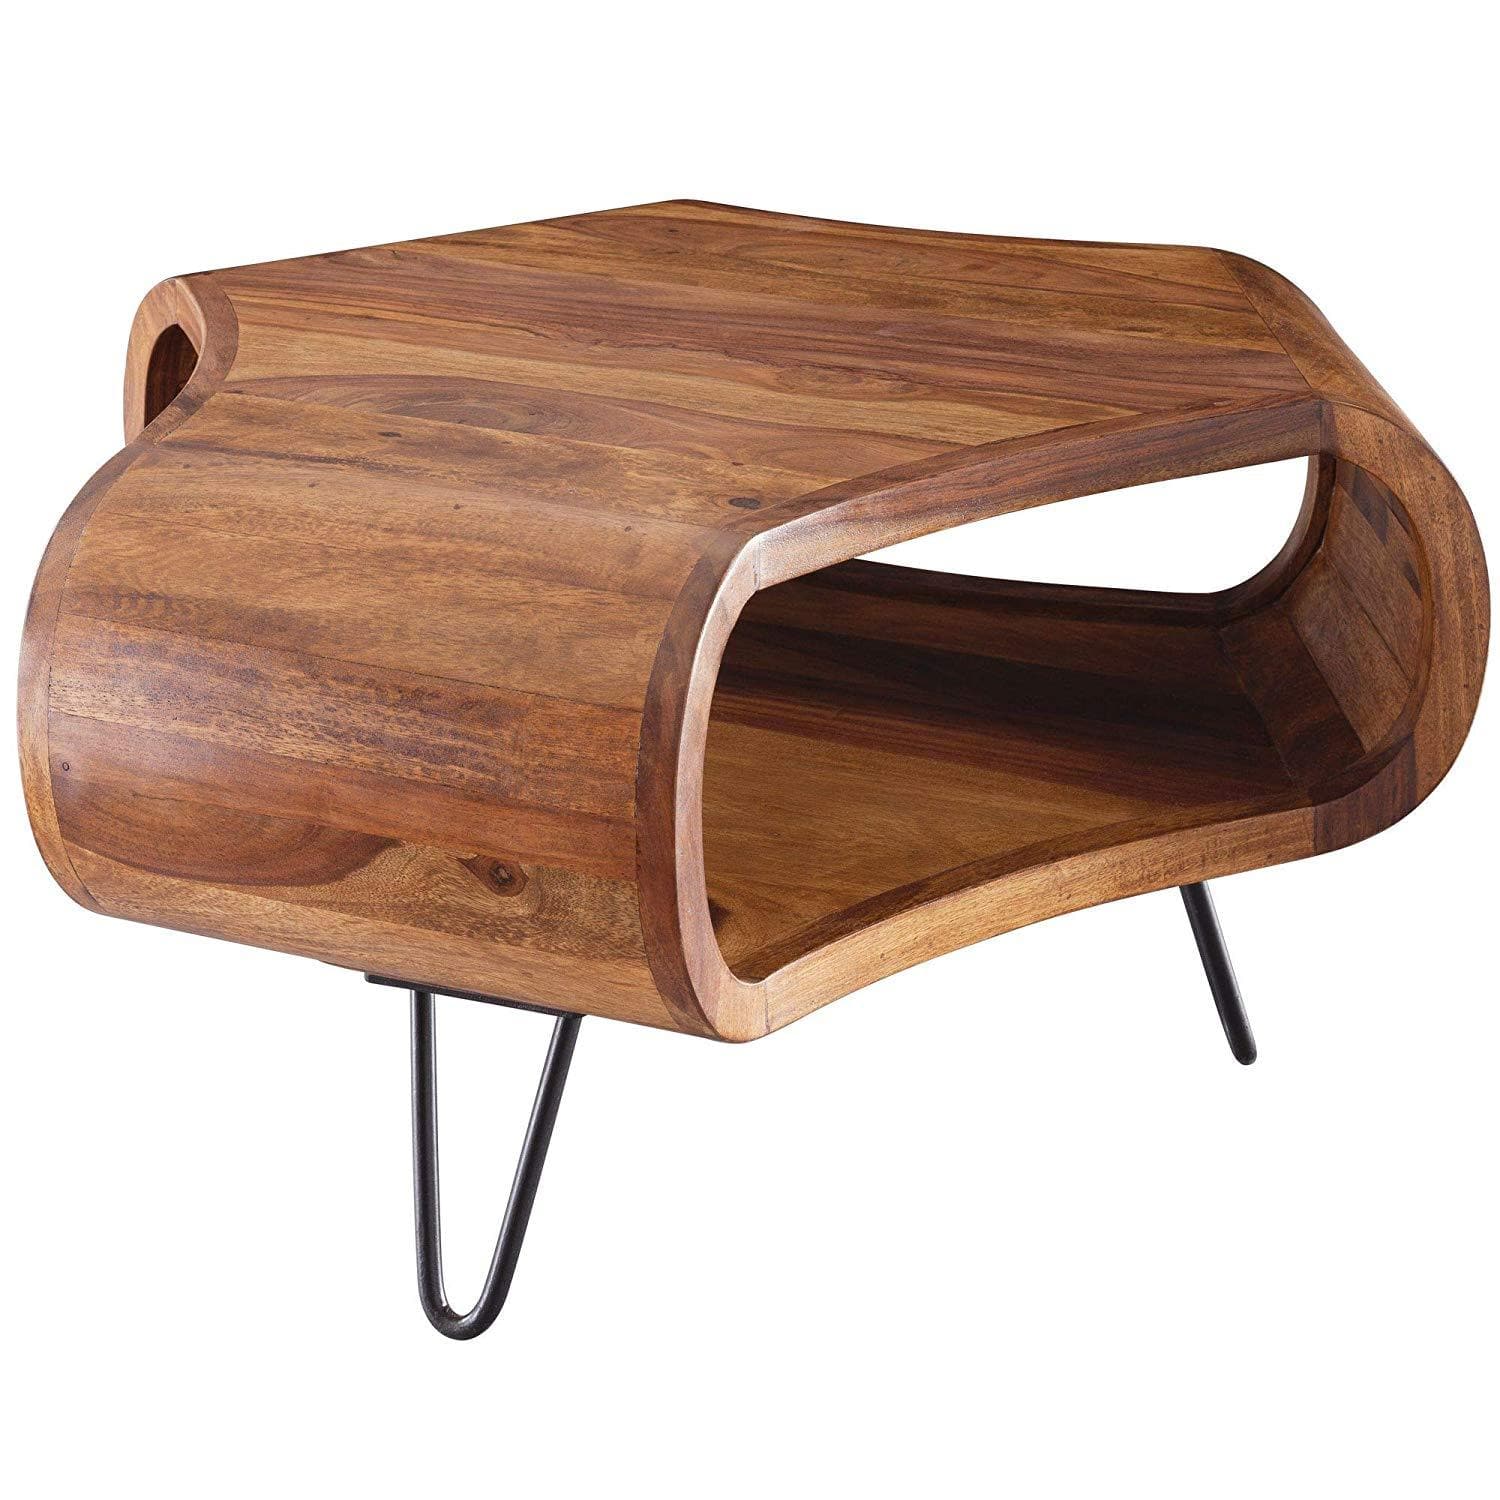 Nancy's Coffee Table Wood - Tables basses modernes en bois - Bois de Sesham - Marron - 55 x 38 x 55 cm